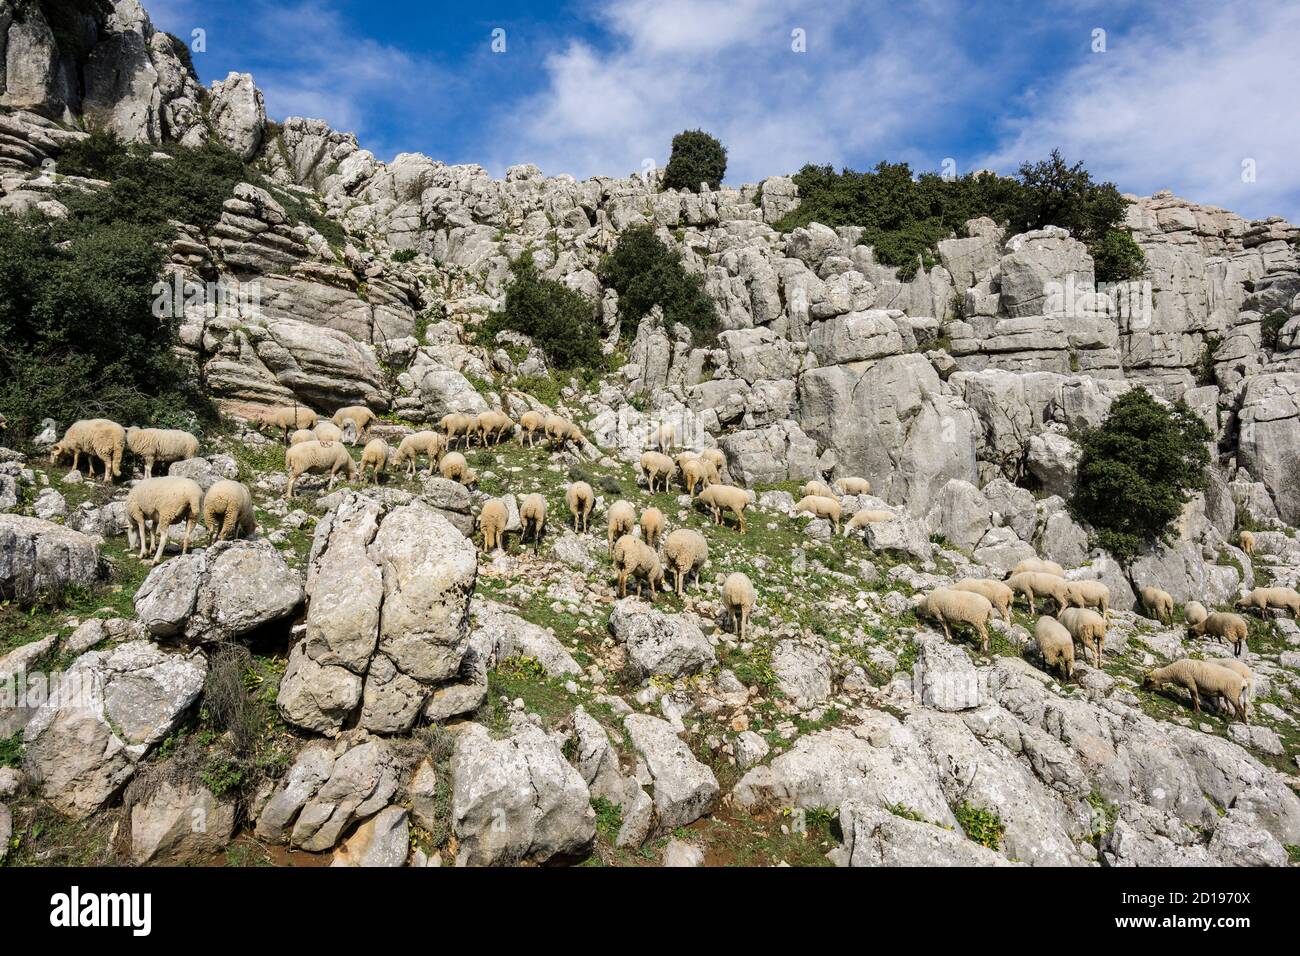 Rebaño de ovejas, paraje Natural Torcal de Antequera, términos municipales de Antequera y Villanueva de la Concepción, provincia de Málaga, Andalucía Foto de stock